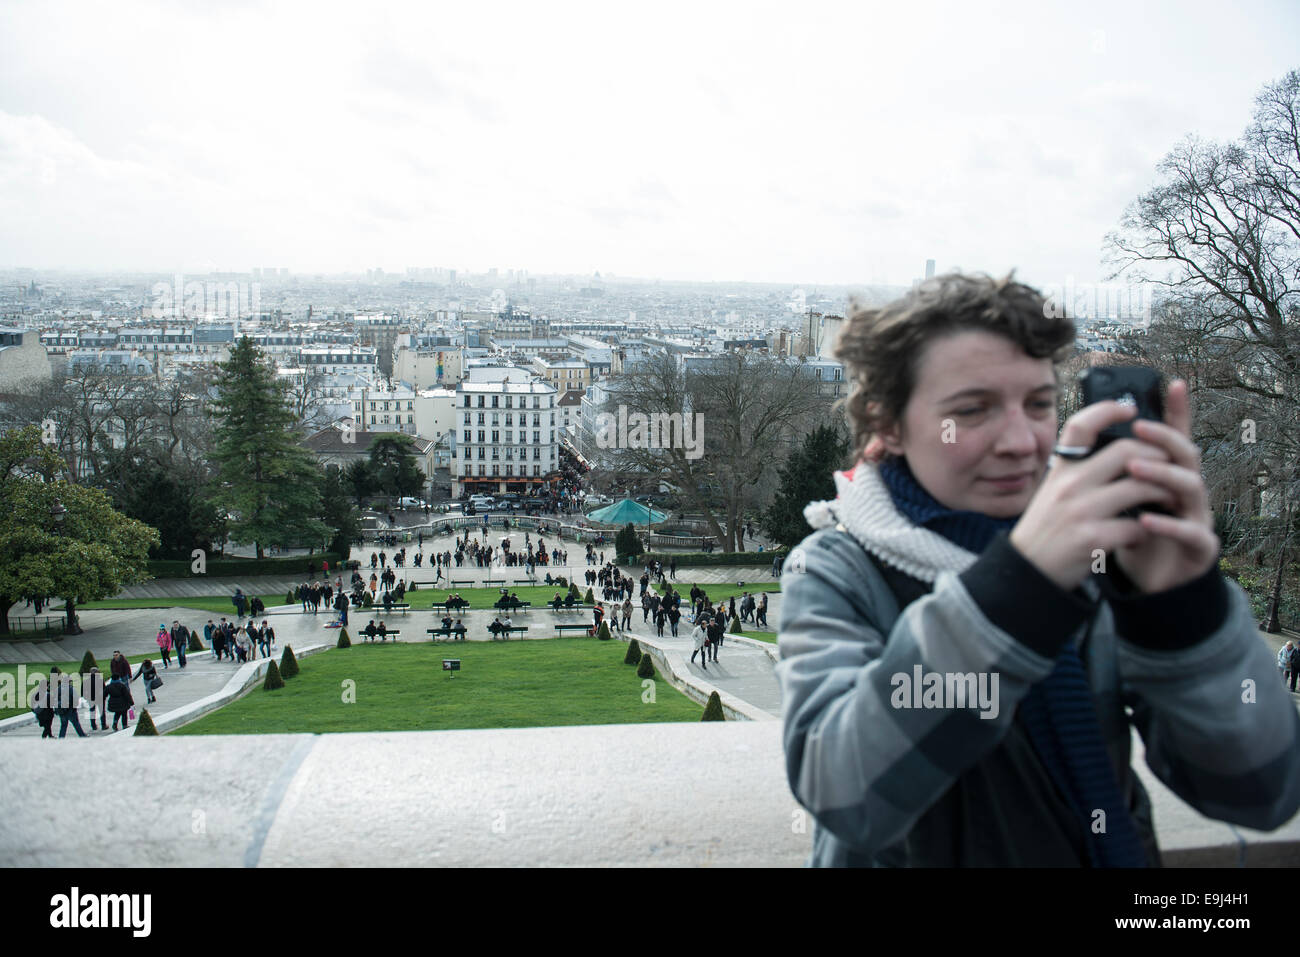 Una persona reale / turistica prendendo una foto al Sacre coeur a Parigi in una destinazione turistica molto conosciuta Foto Stock